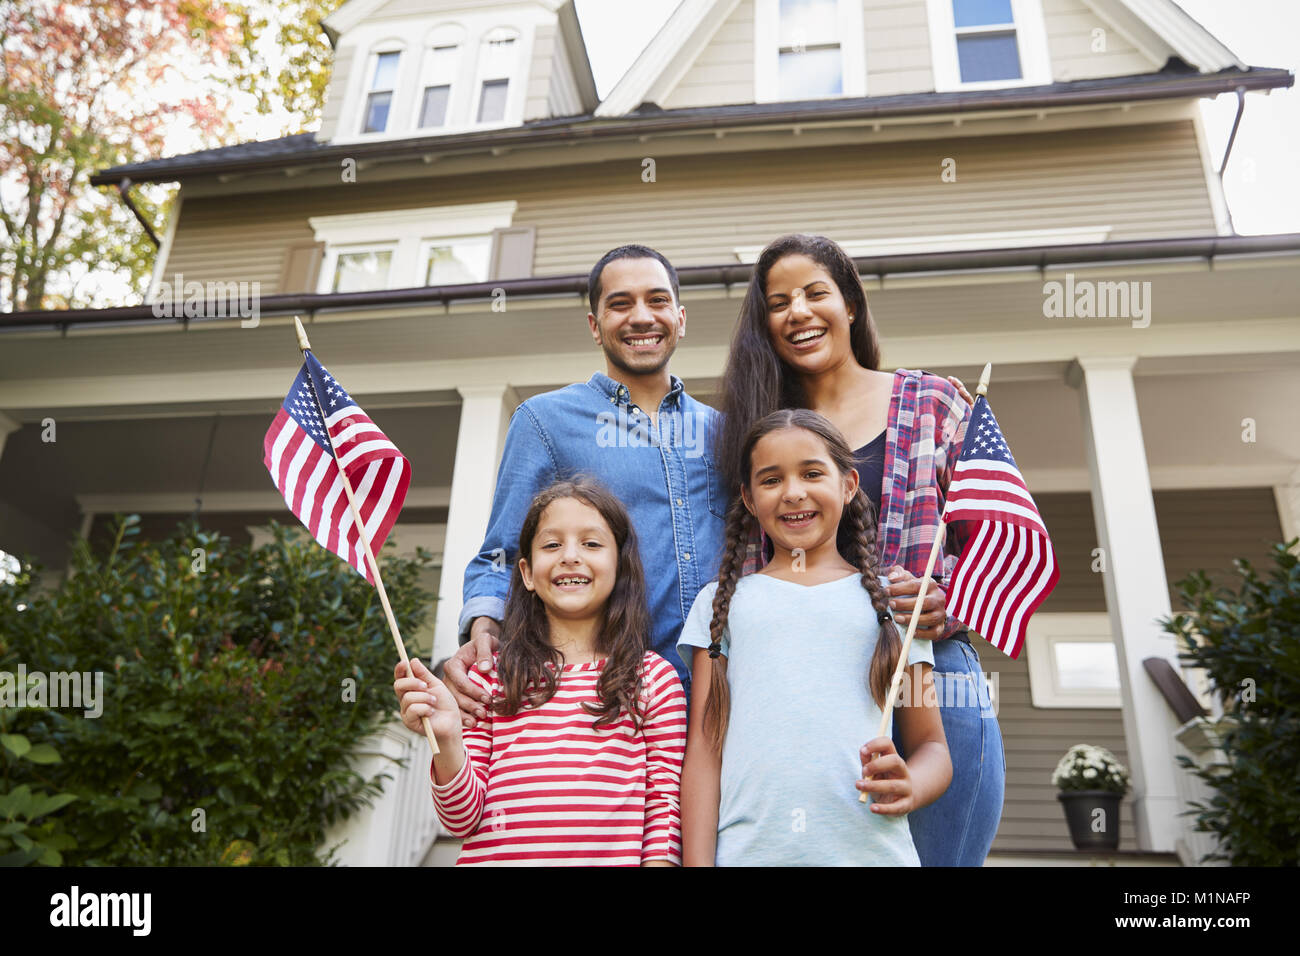 Portrait de famille à l'extérieur Chambre Holding American Flags Banque D'Images